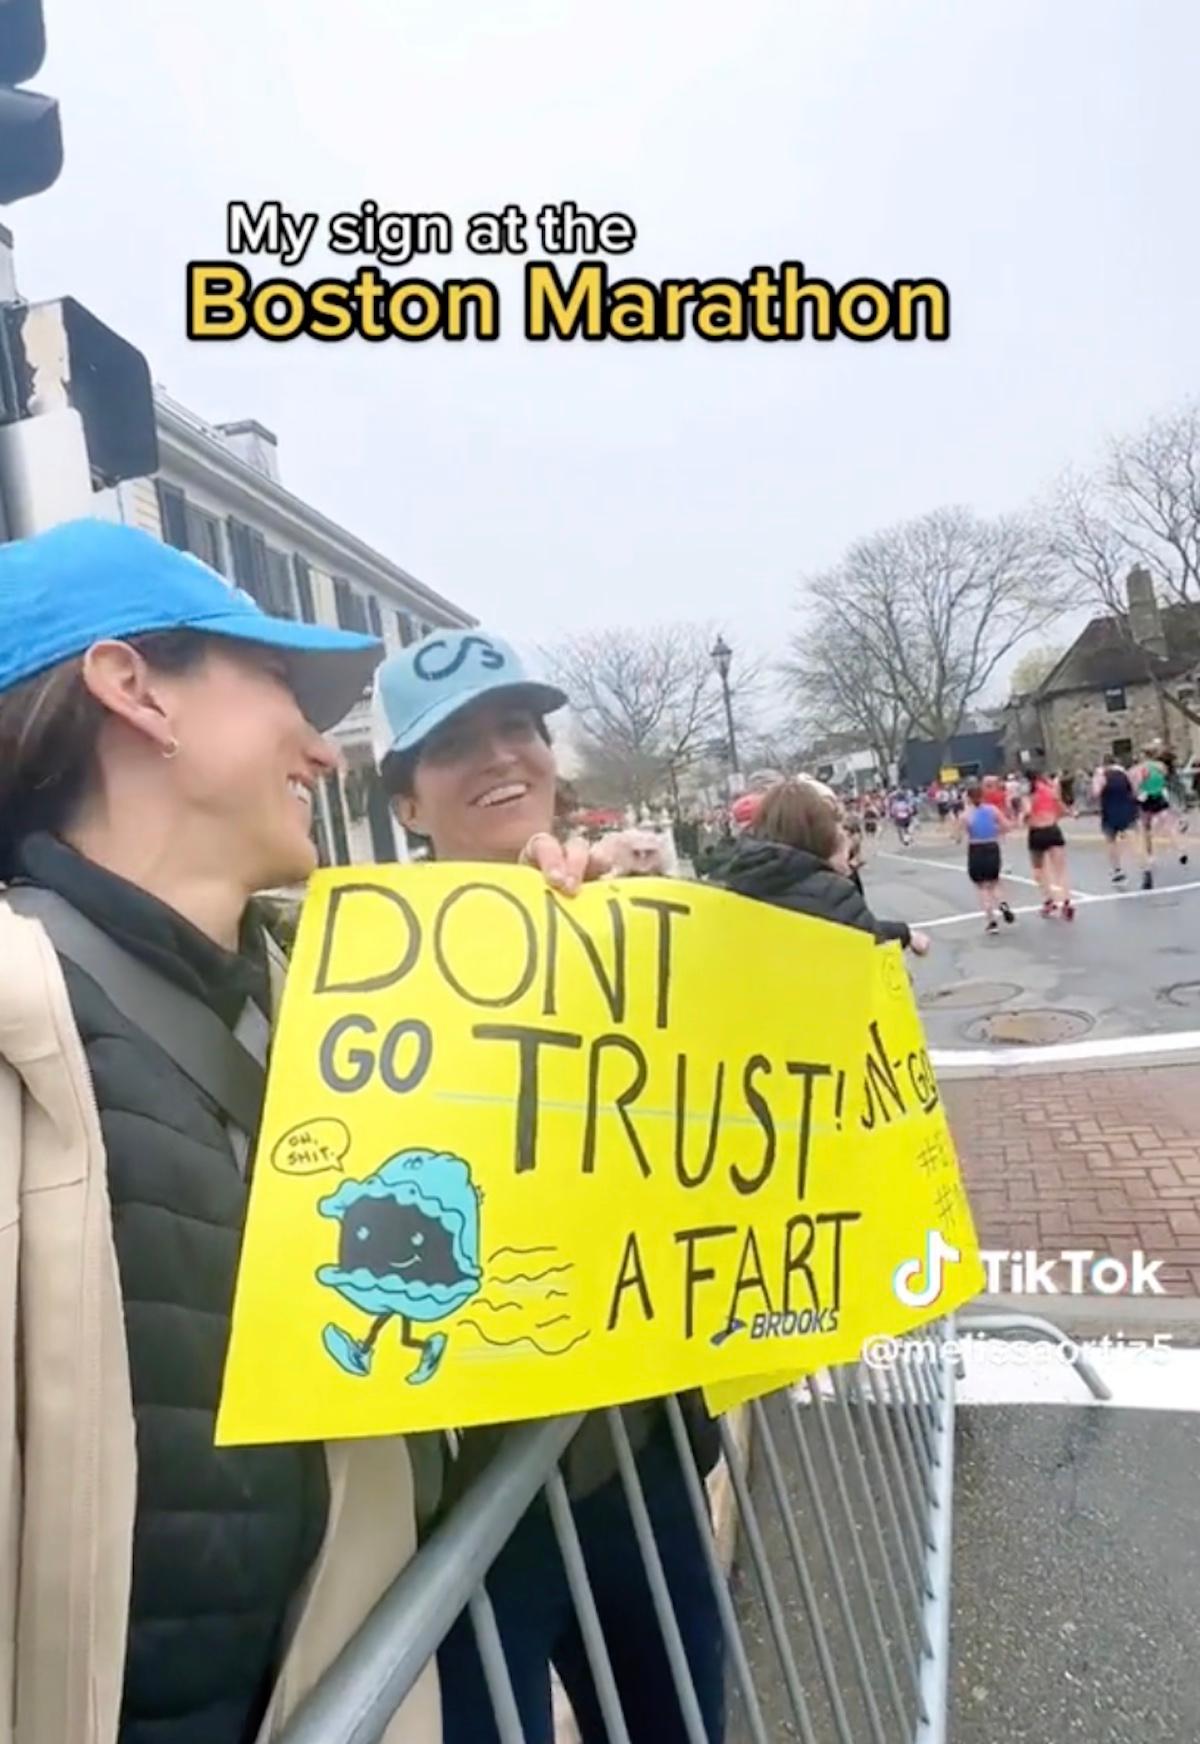 Una donna con in mano un cartello che dice "Non fidarti di un pezzetto" ad una maratona